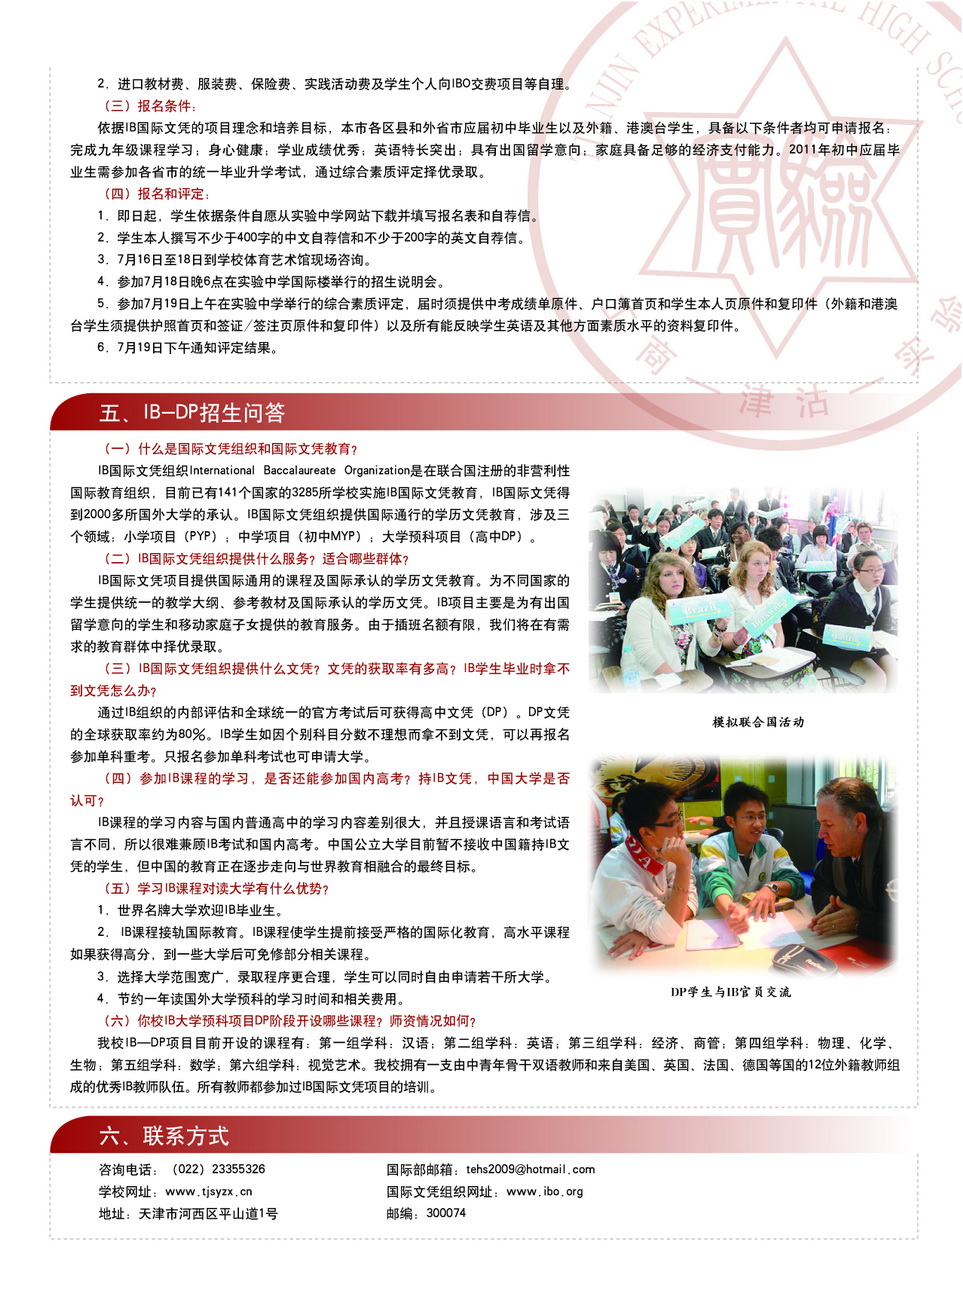 天津市实验中学2011年国际部IB-DP招生简章2